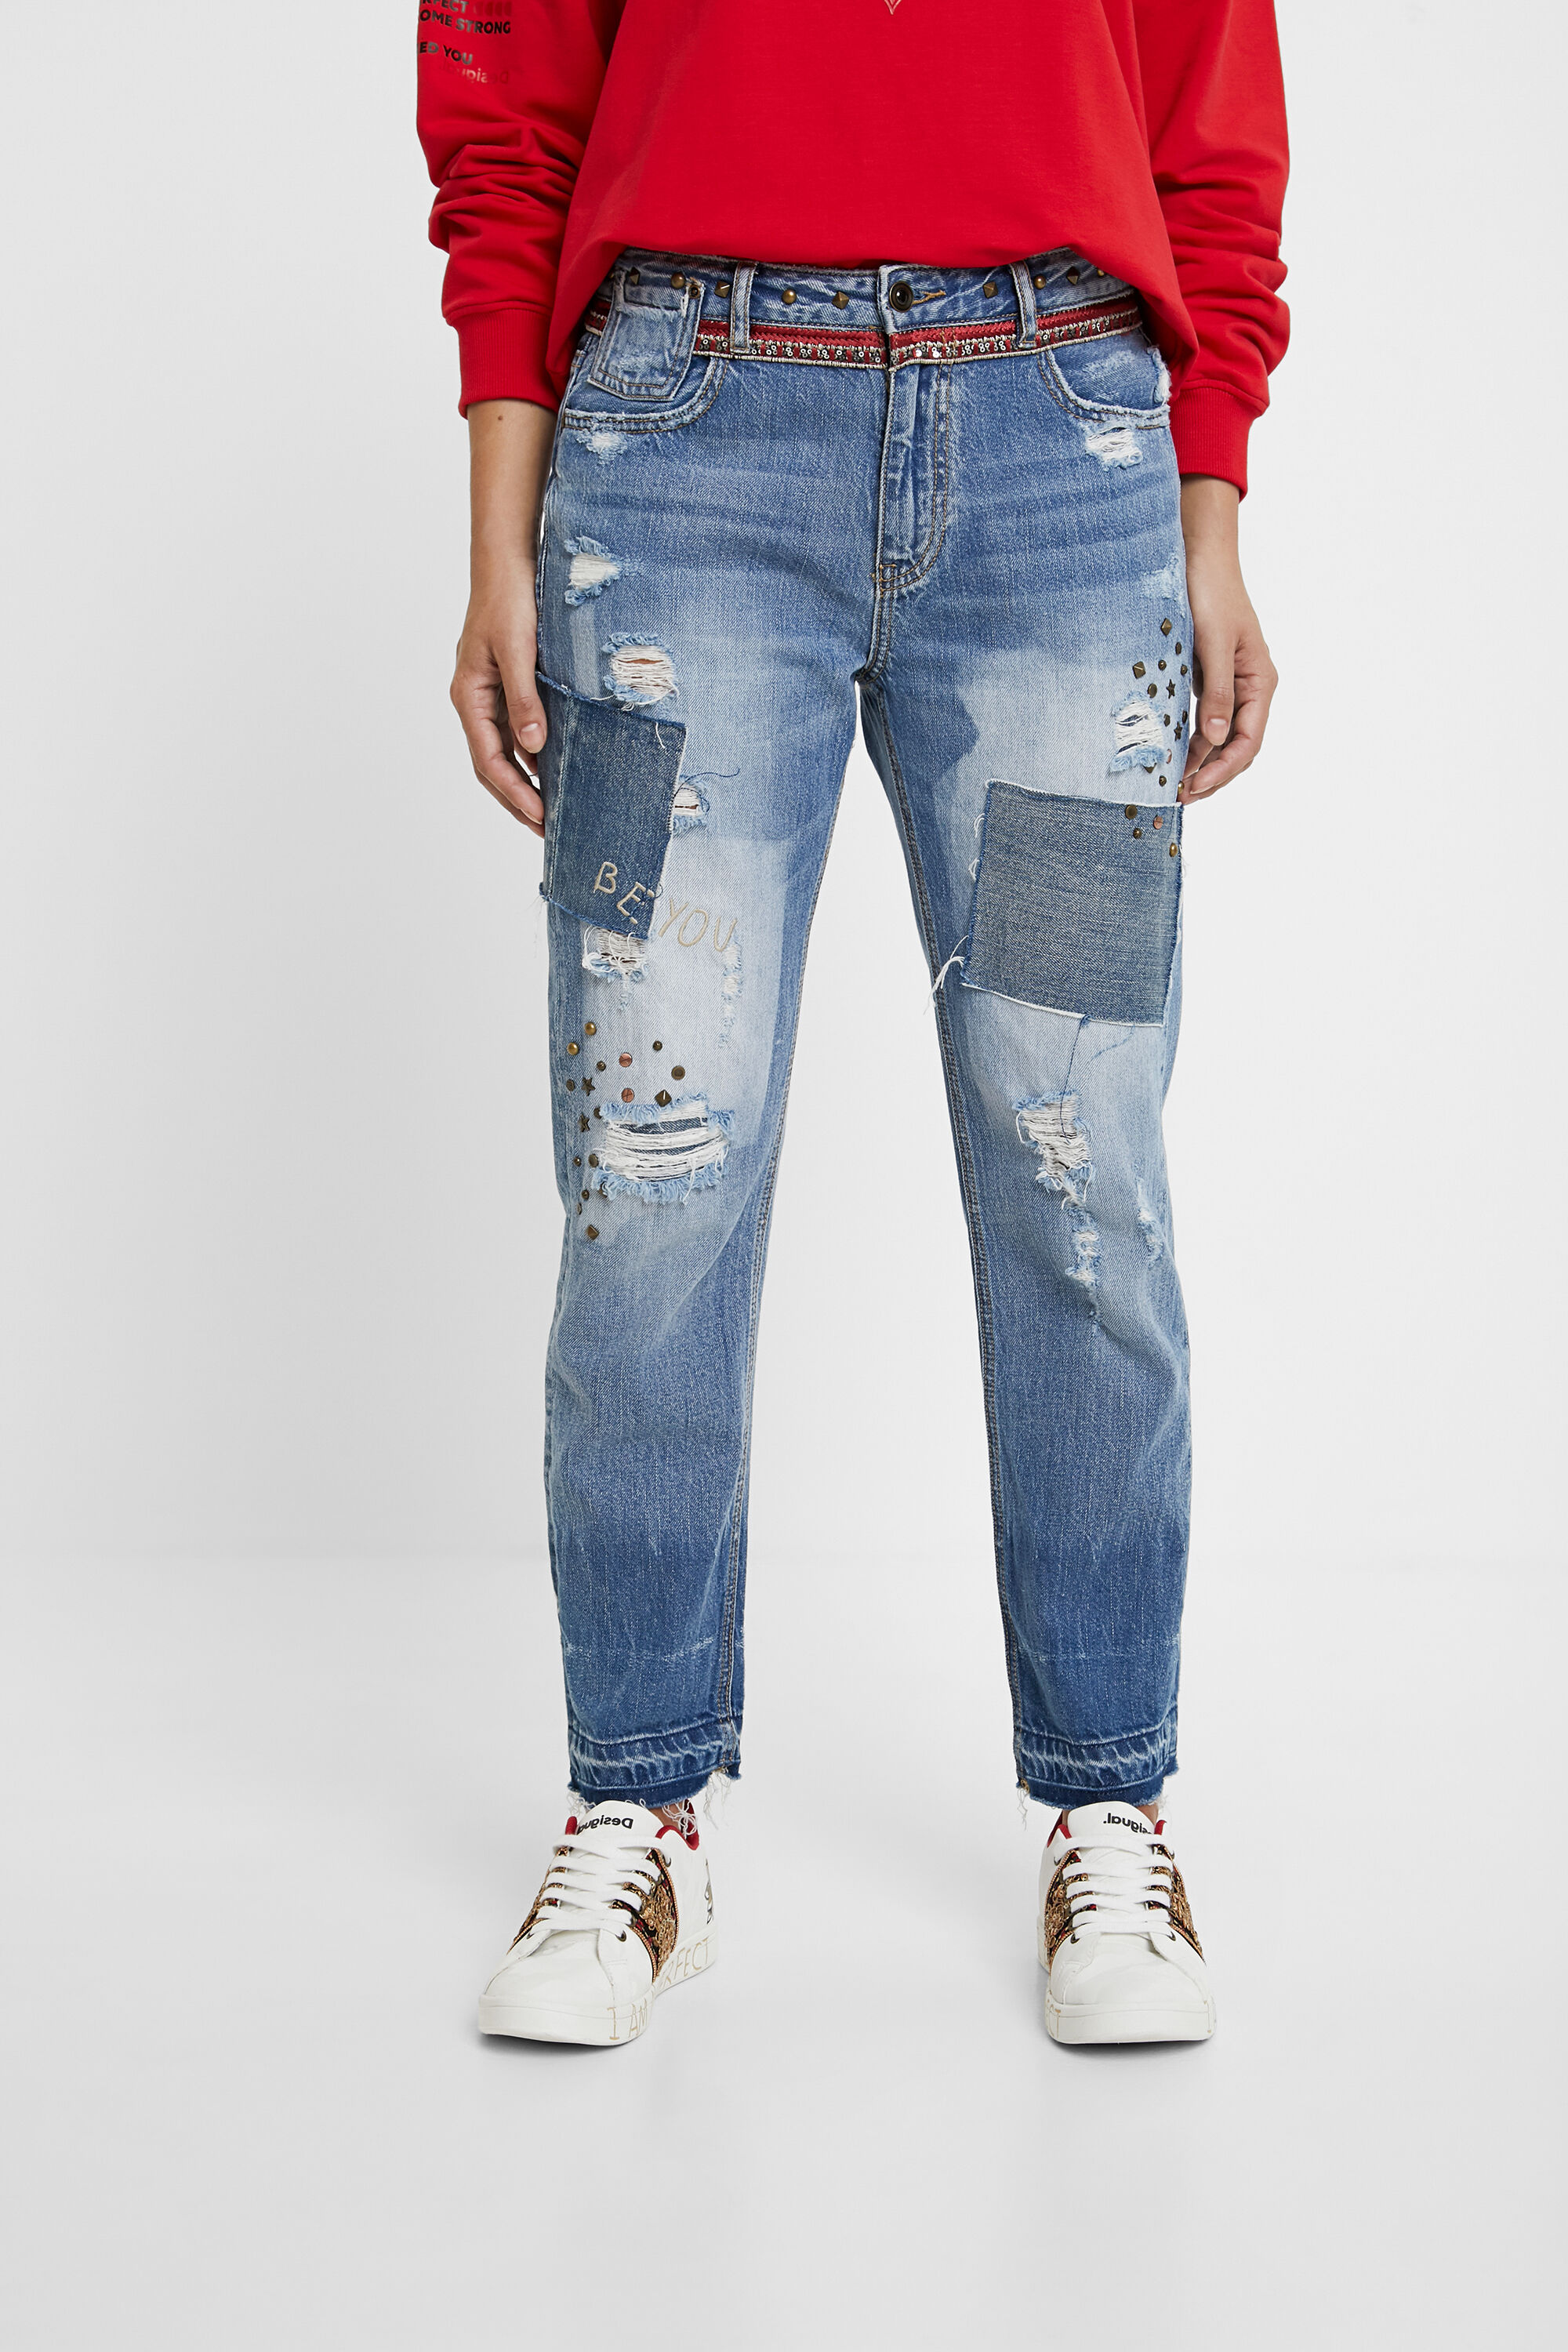 desigual jeans sale